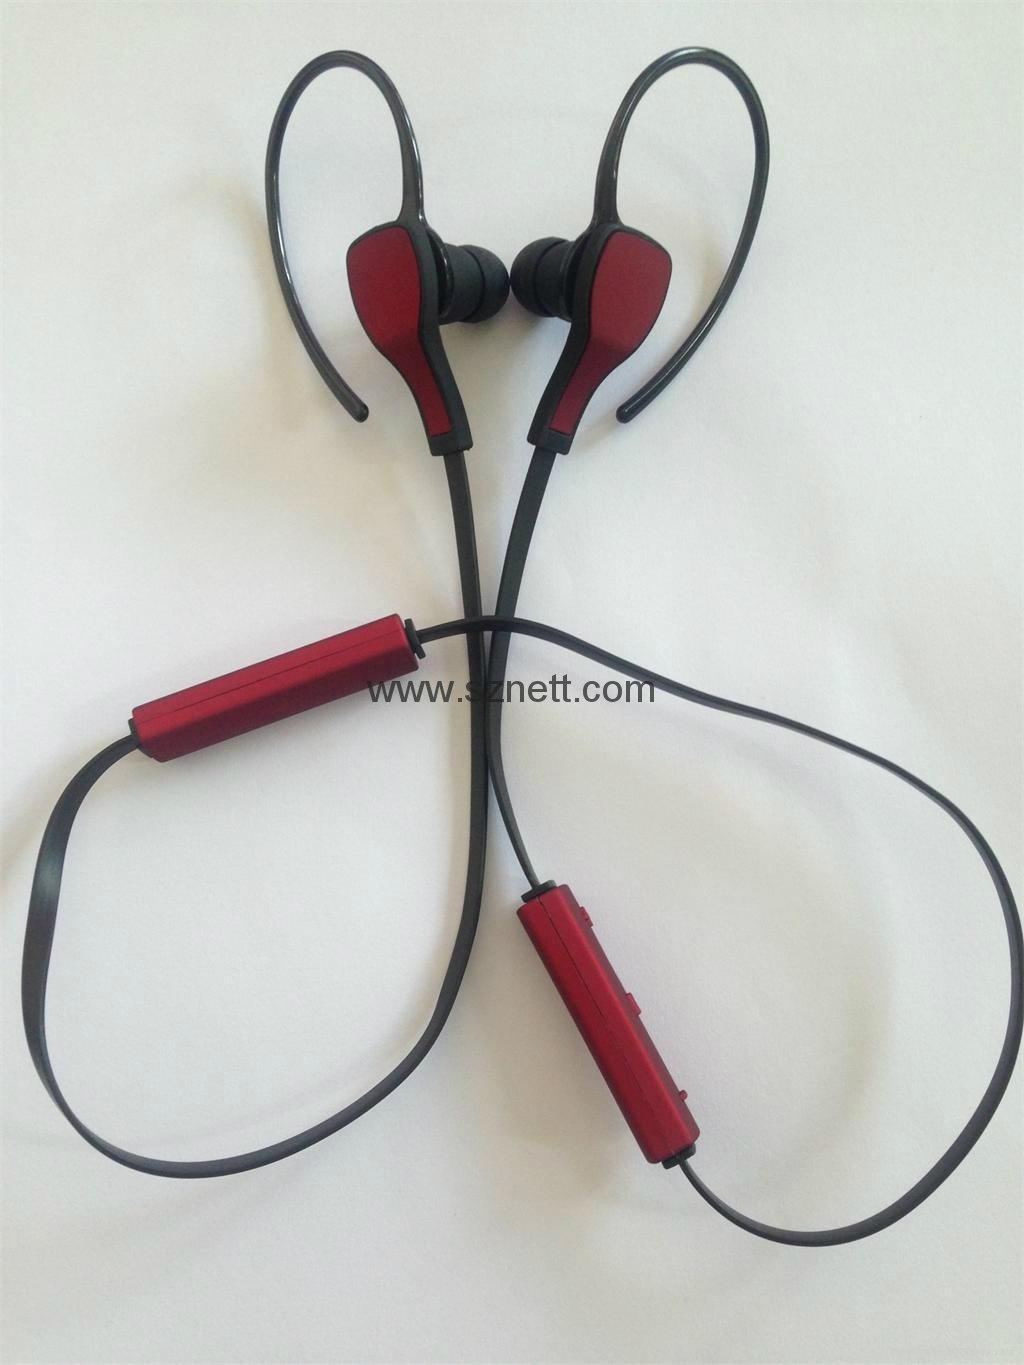 HS-06 Sport  In-ear wireless bluetooth 4.0 stereo headphone headset earphone